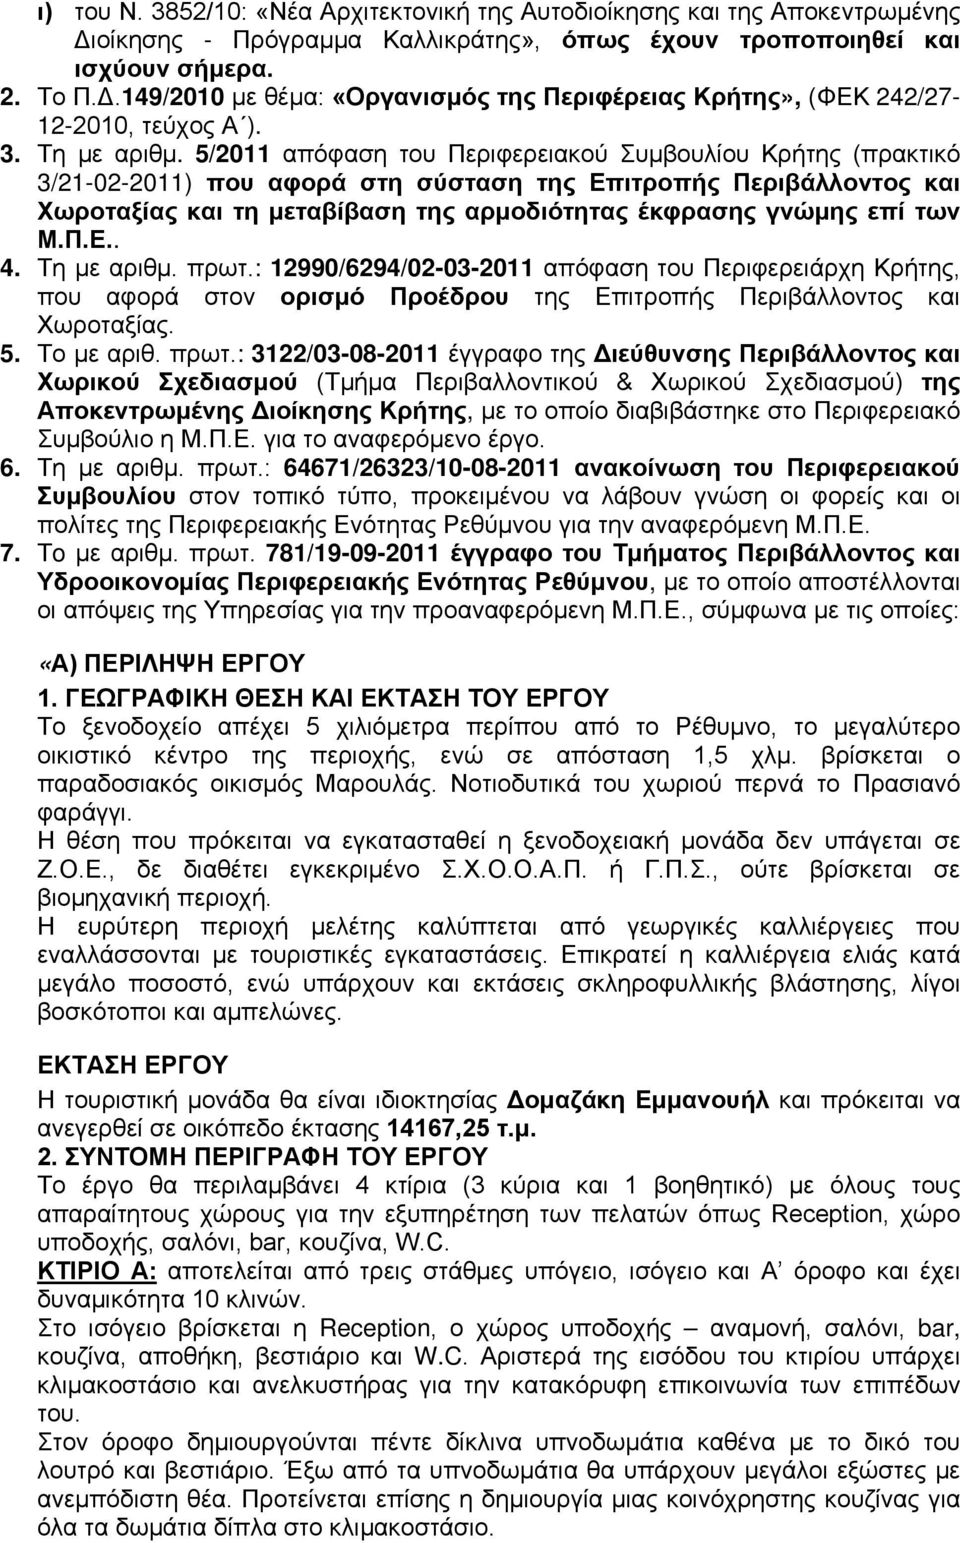 5/2011 απόφαση του Περιφερειακού Συμβουλίου Κρήτης (πρακτικό 3/21-02-2011) που αφορά στη σύσταση της Επιτροπής Περιβάλλοντος και Χωροταξίας και τη μεταβίβαση της αρμοδιότητας έκφρασης γνώμης επί των